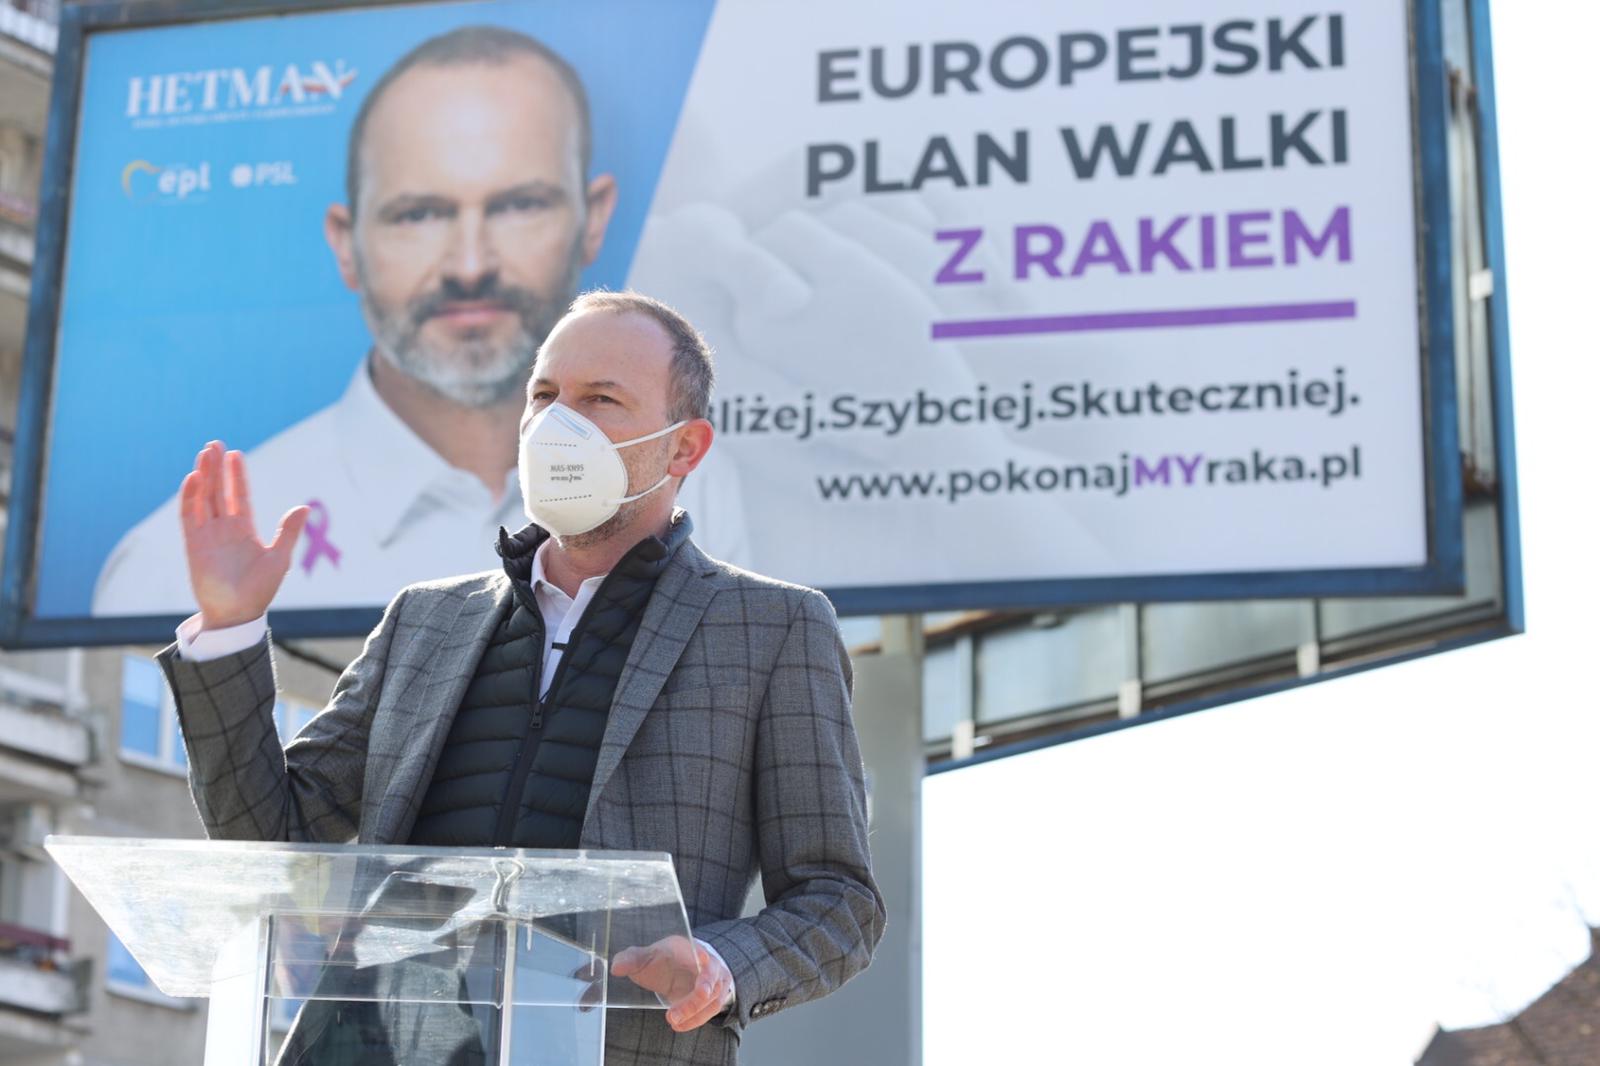 Europejski Plan Walki z Rakiem. Lubelski europoseł zaczyna kampanię społeczną - Zdjęcie główne